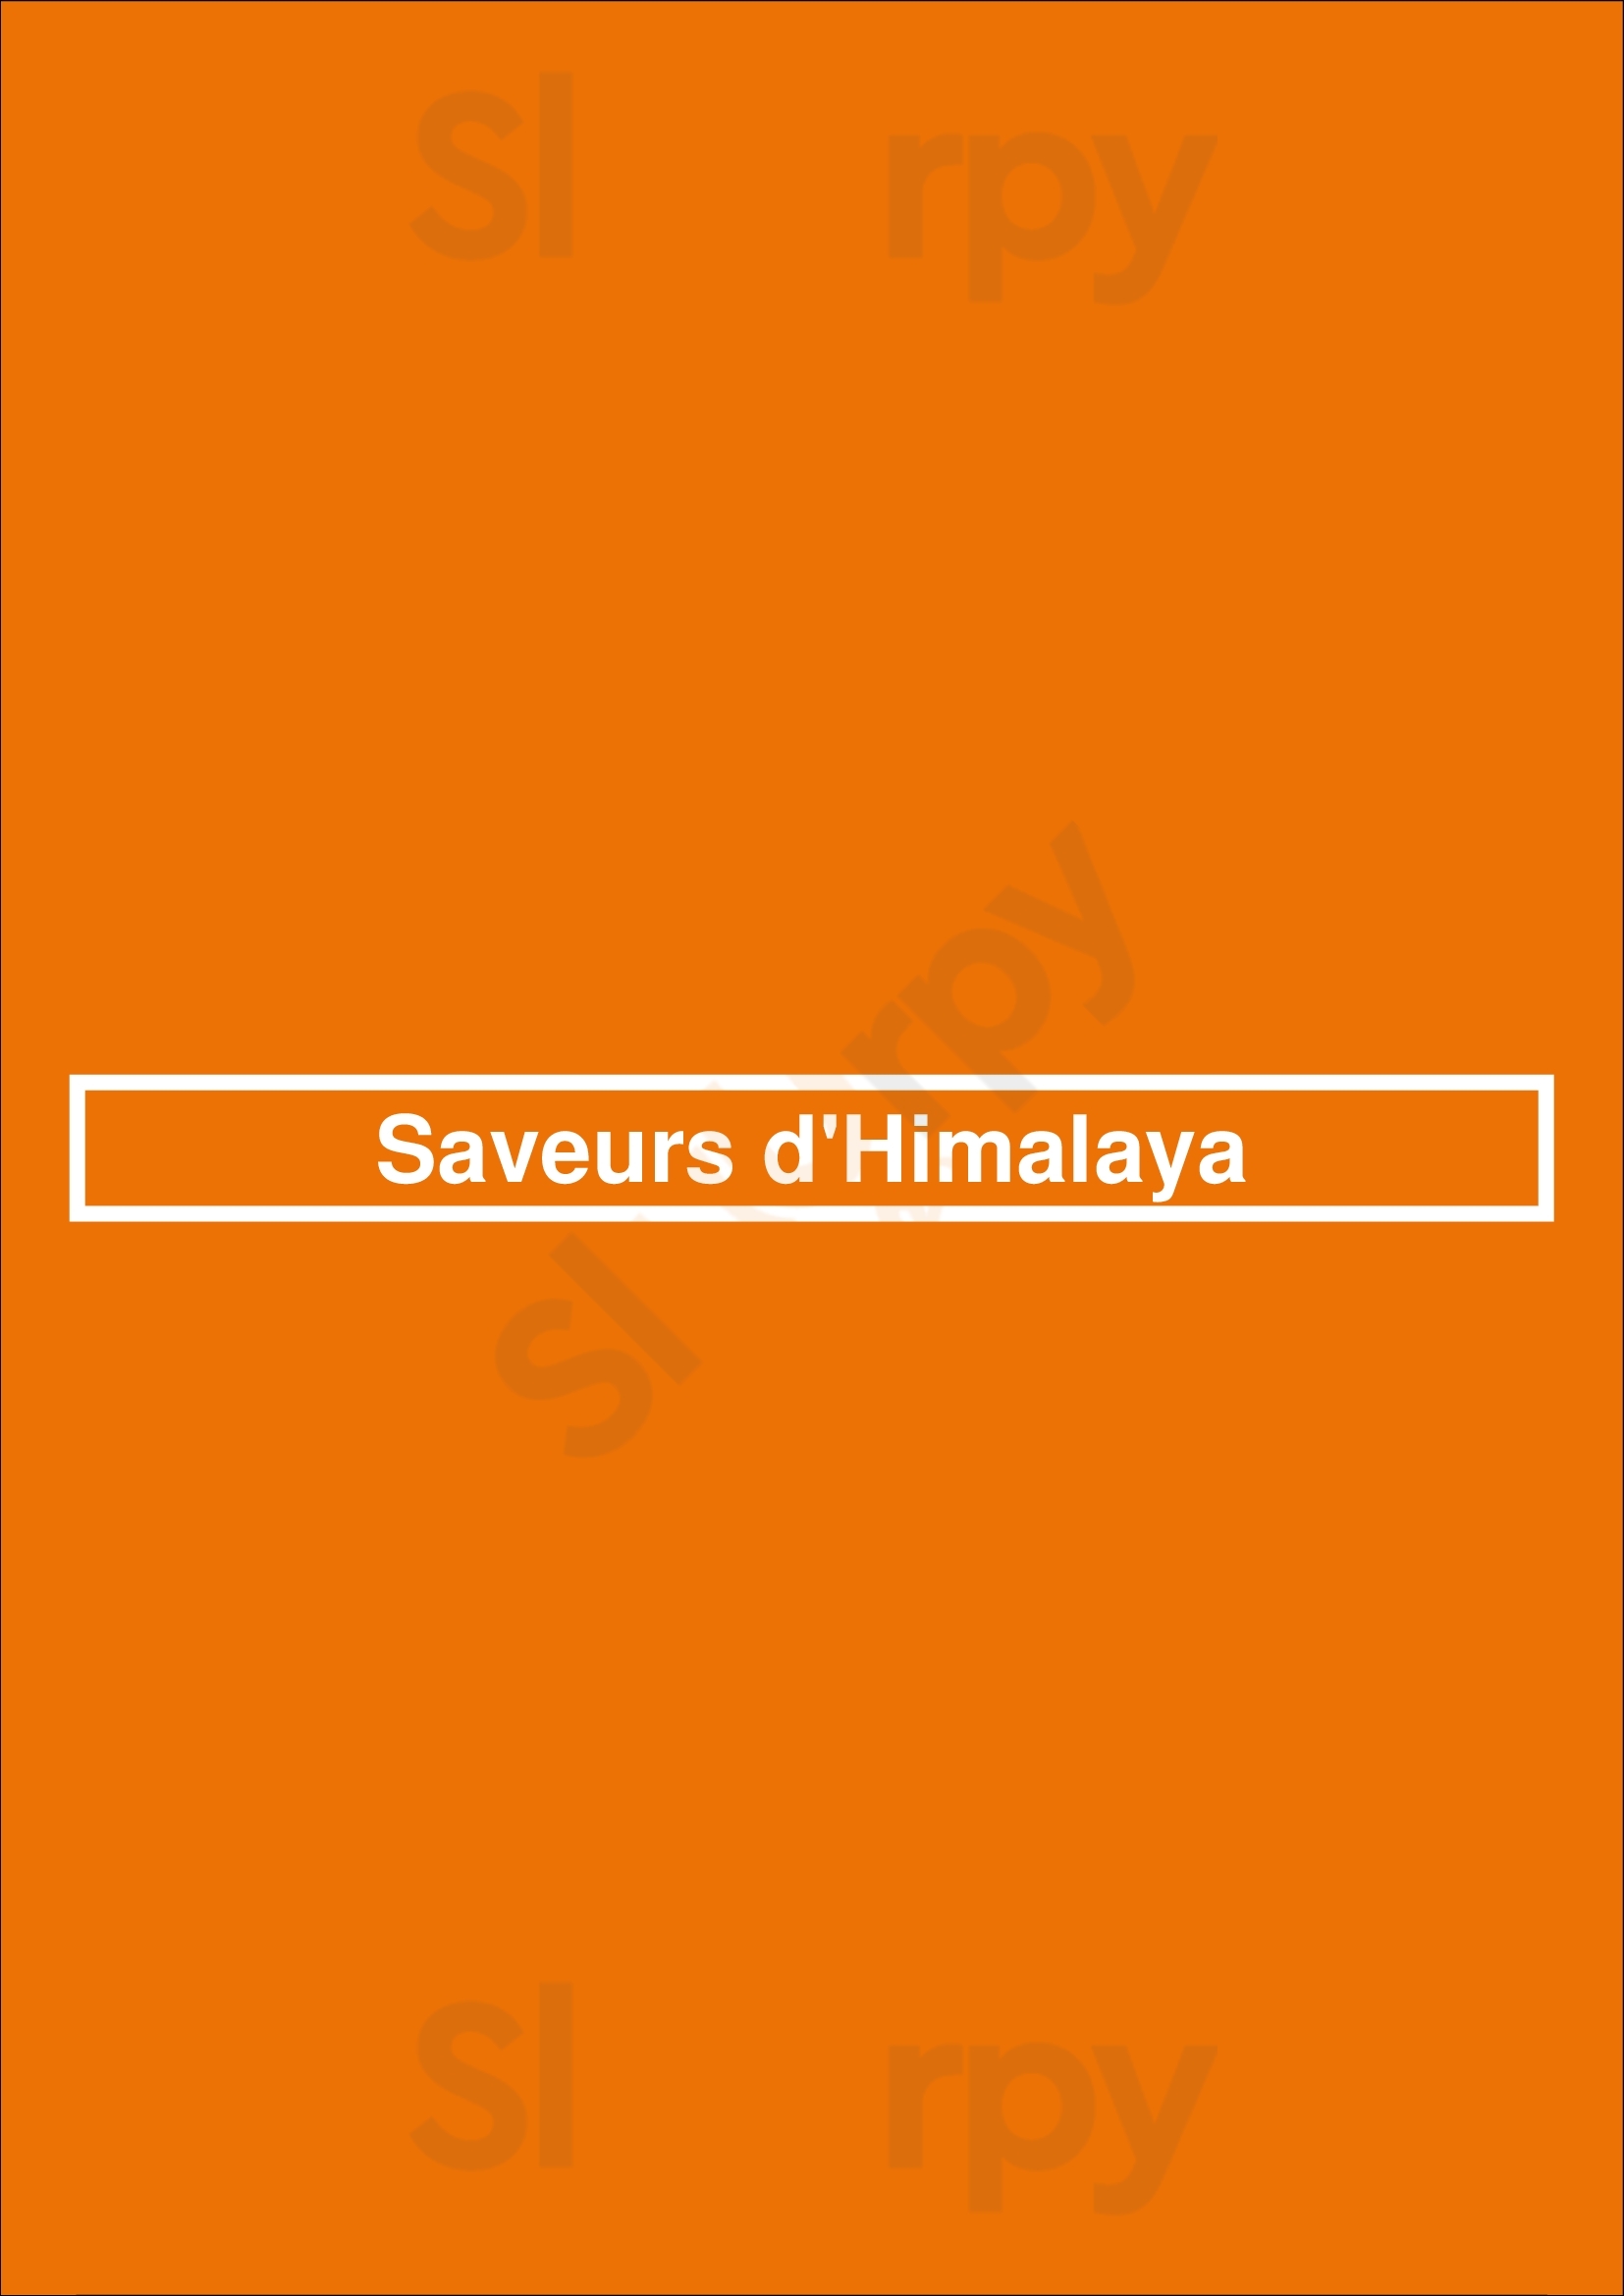 Saveurs D'himalaya Paris Menu - 1